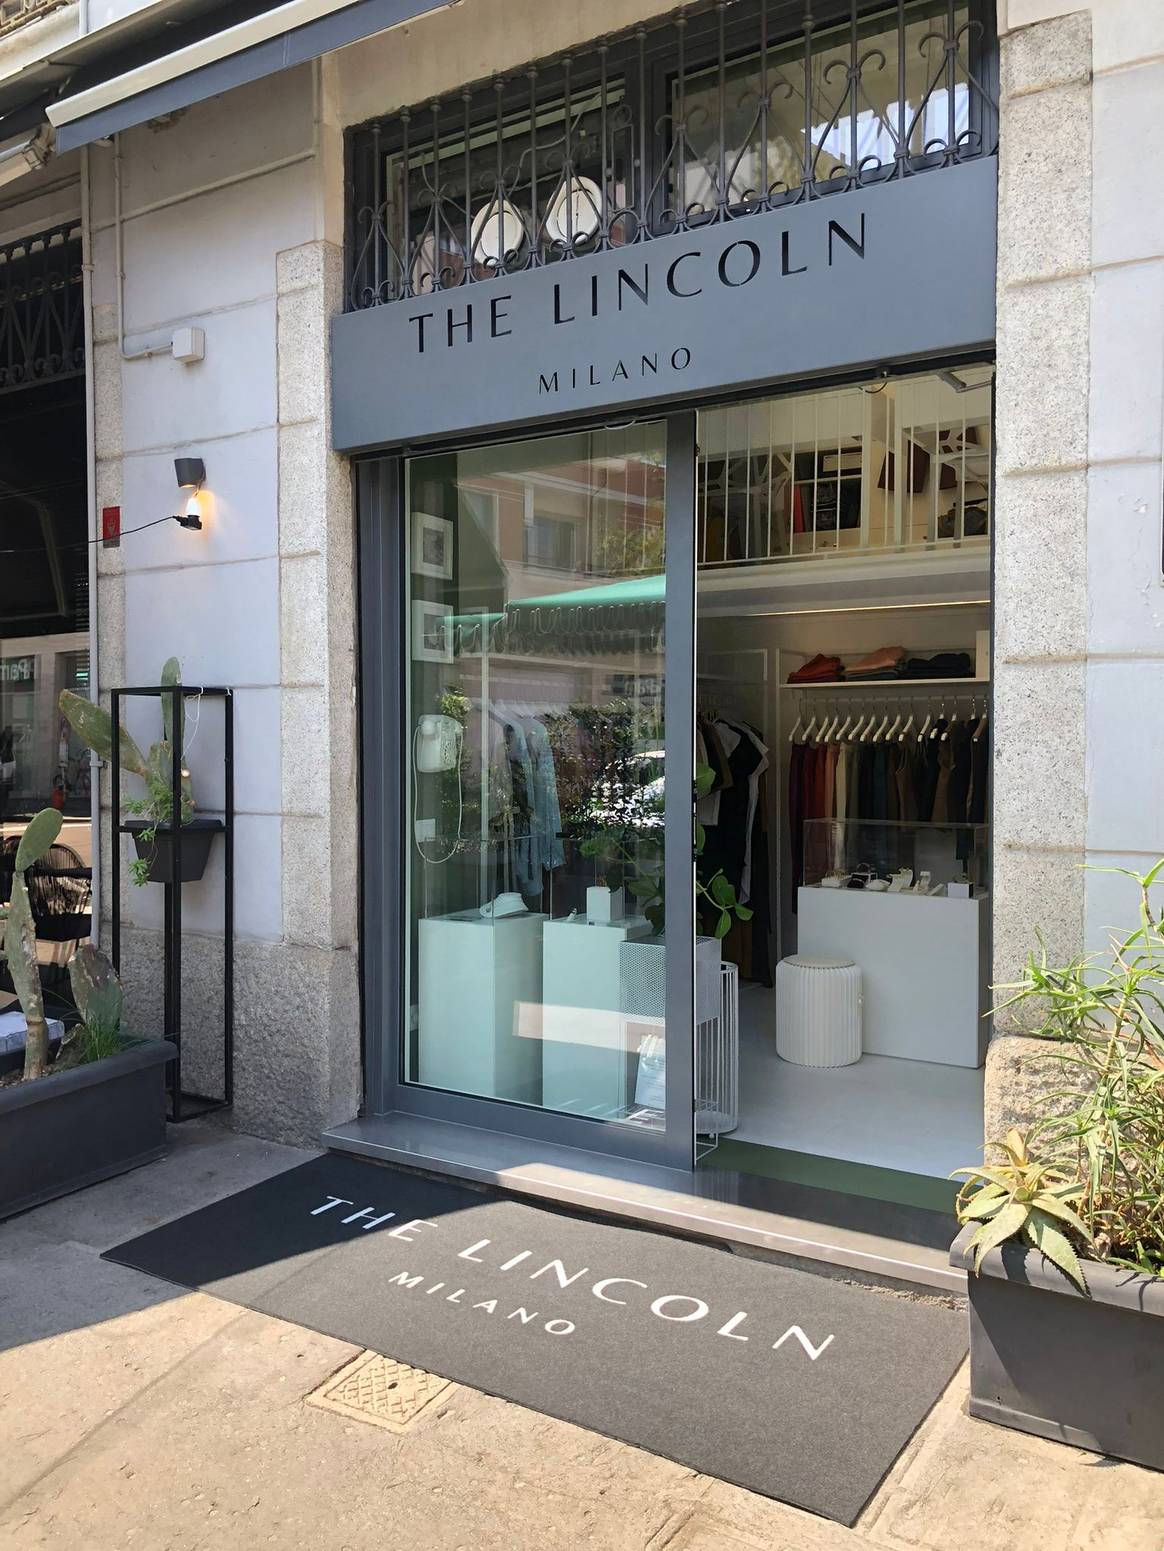 The Lincoln Milano